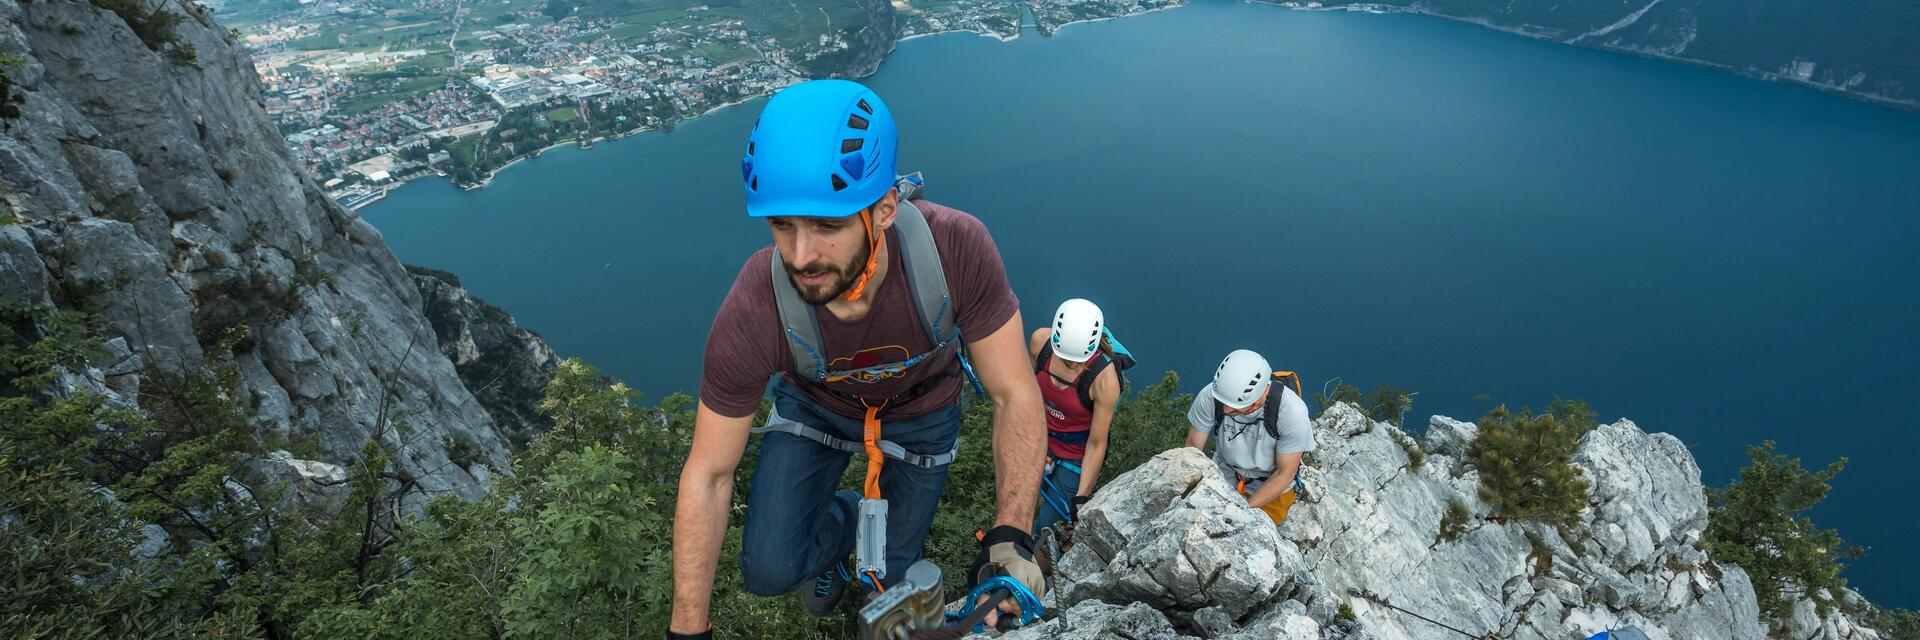 Mężczyźni i kobieta wspinający się po  górach w kaskach wspinaczkowych 